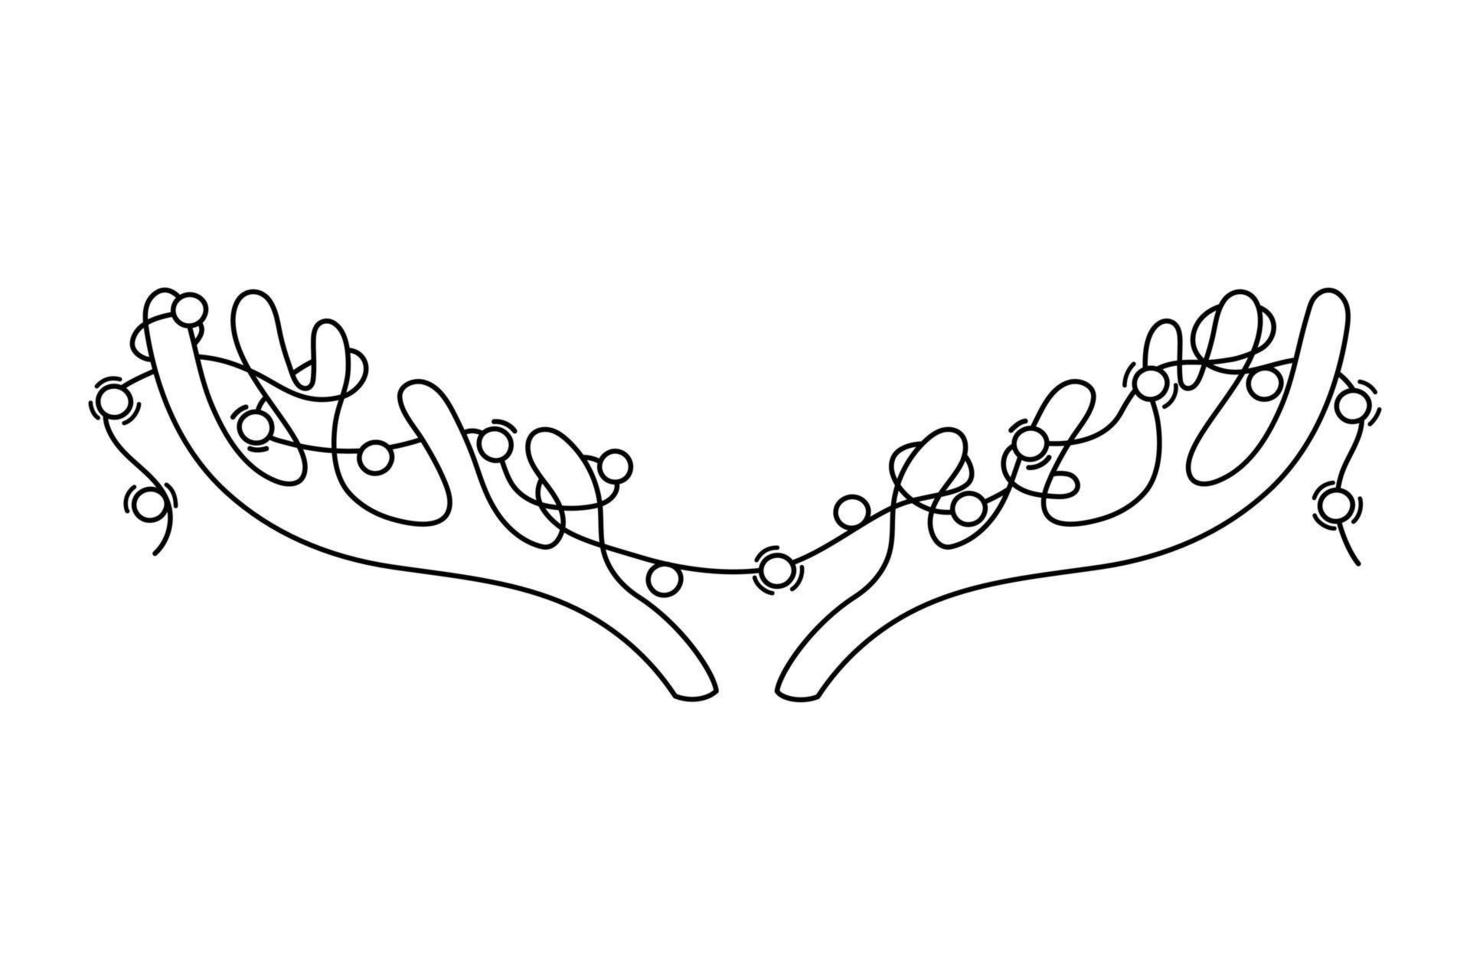 Ilustración de vector de contorno de astas y guirnaldas. cuernos de garabatos aislados de ciervos y luces. dibujo de elemento de diseño de navidad negro sobre fondo blanco